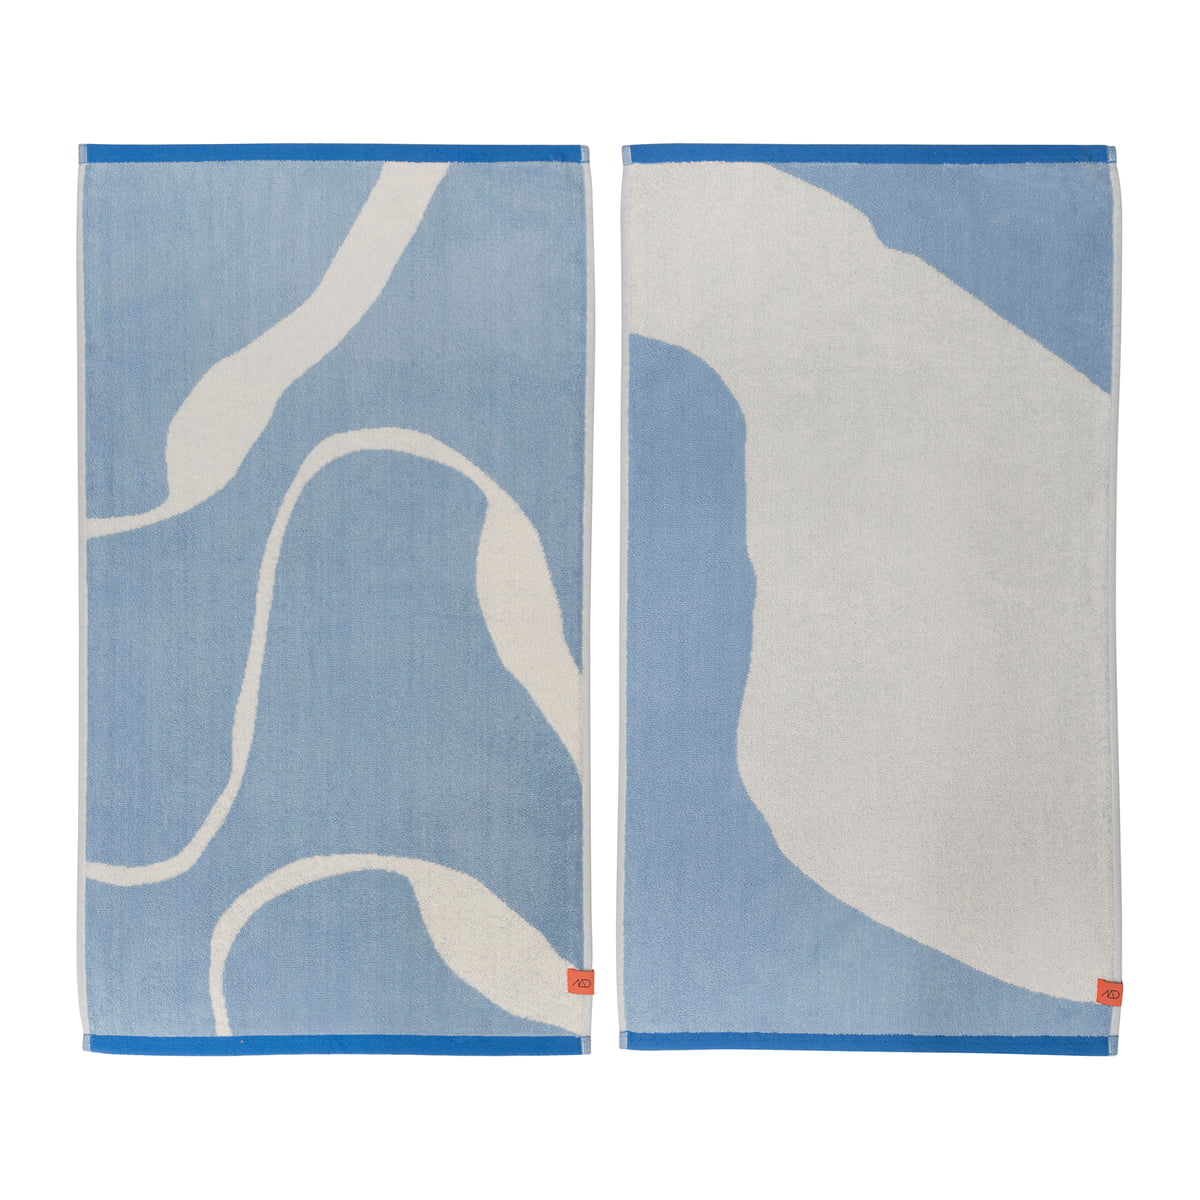 mette ditmer - nova arte serviette de bain, 50 x 90 cm, bleu clair / blanc cassé (lot de 2)